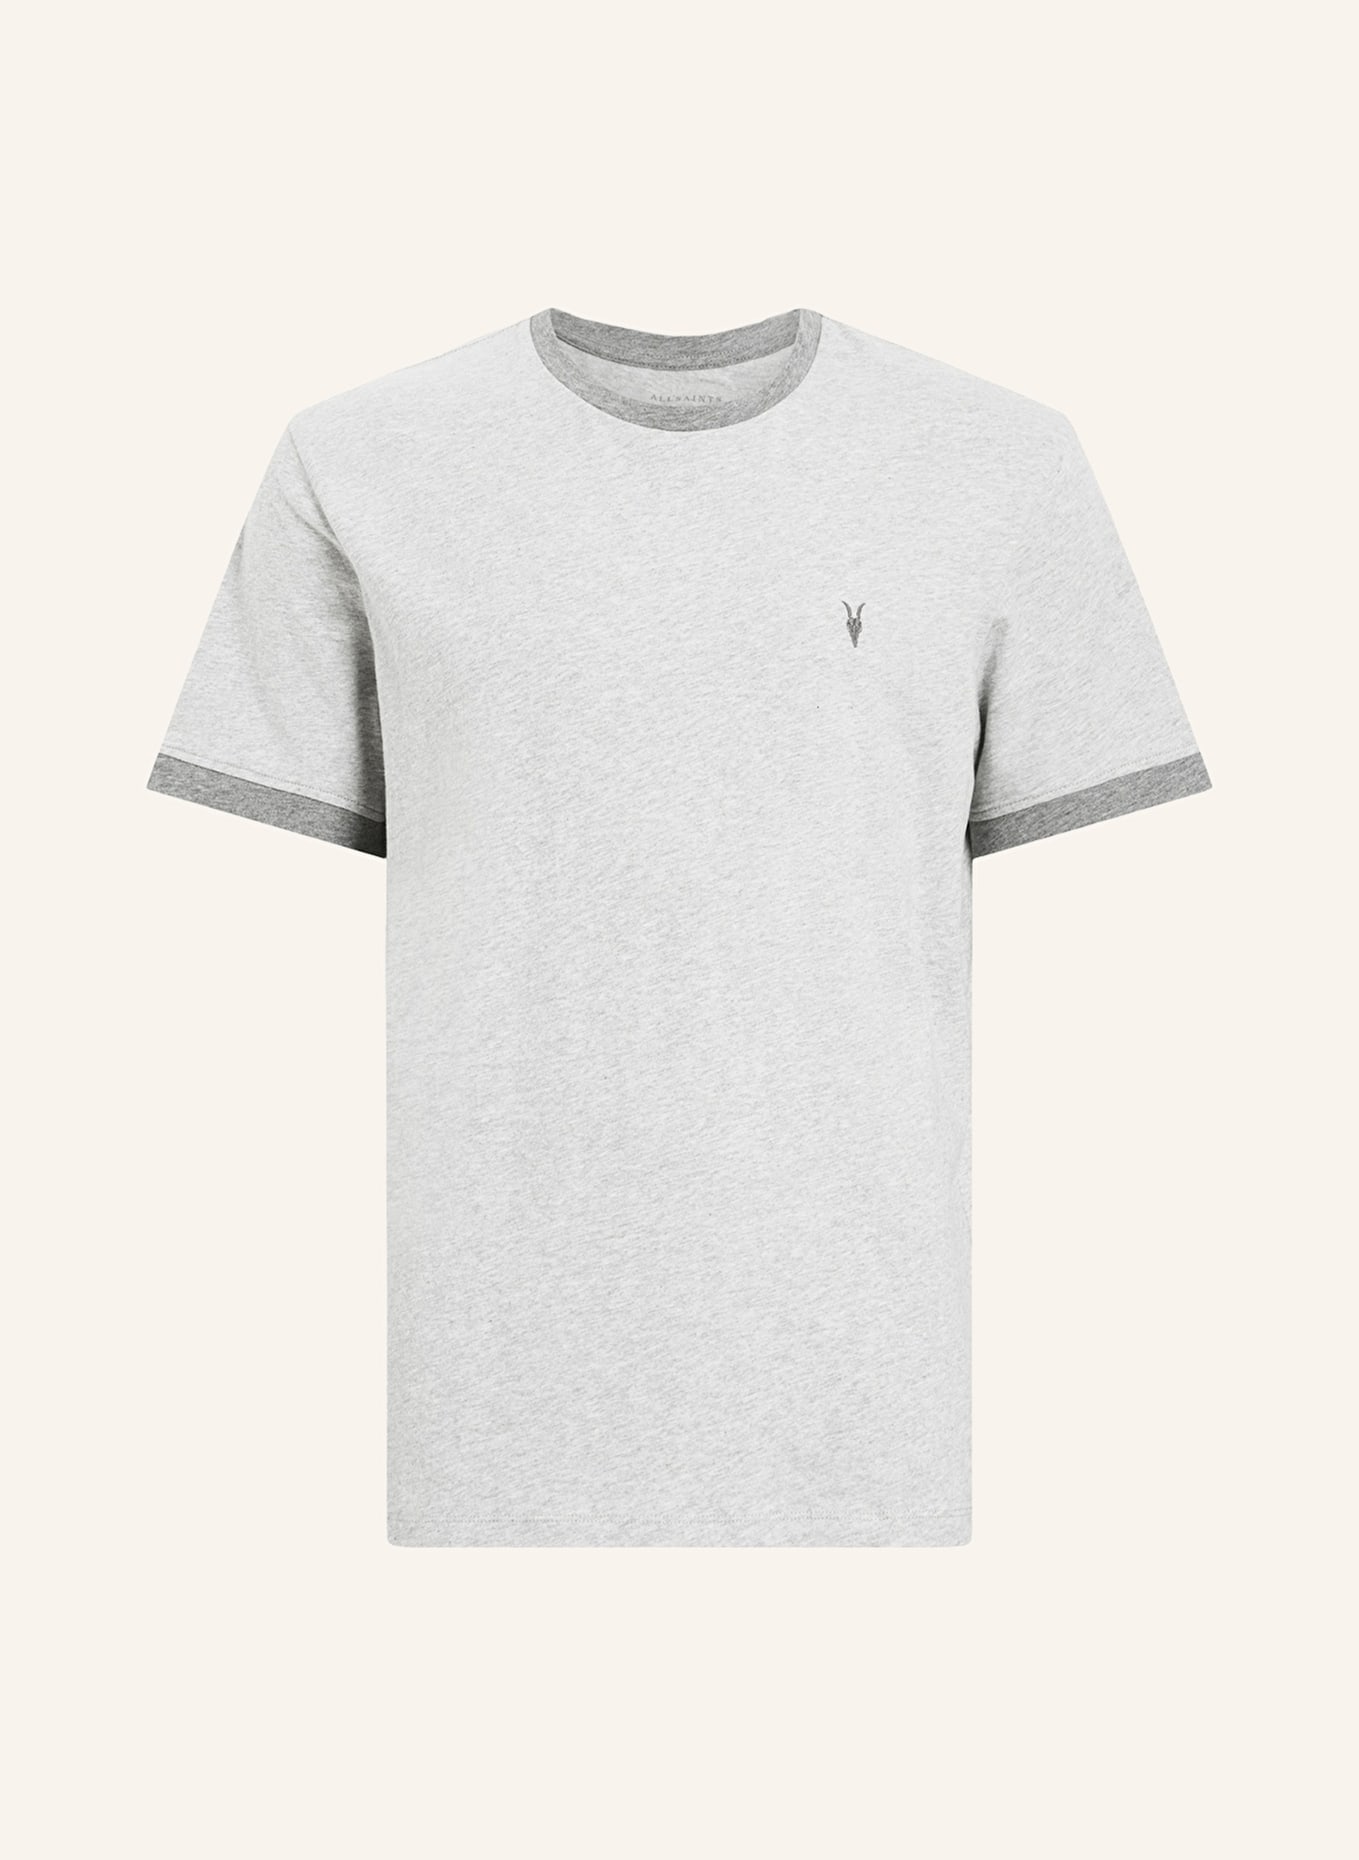 ALLSAINTS T-shirt HARRIS, Color: GRAY (Image 1)